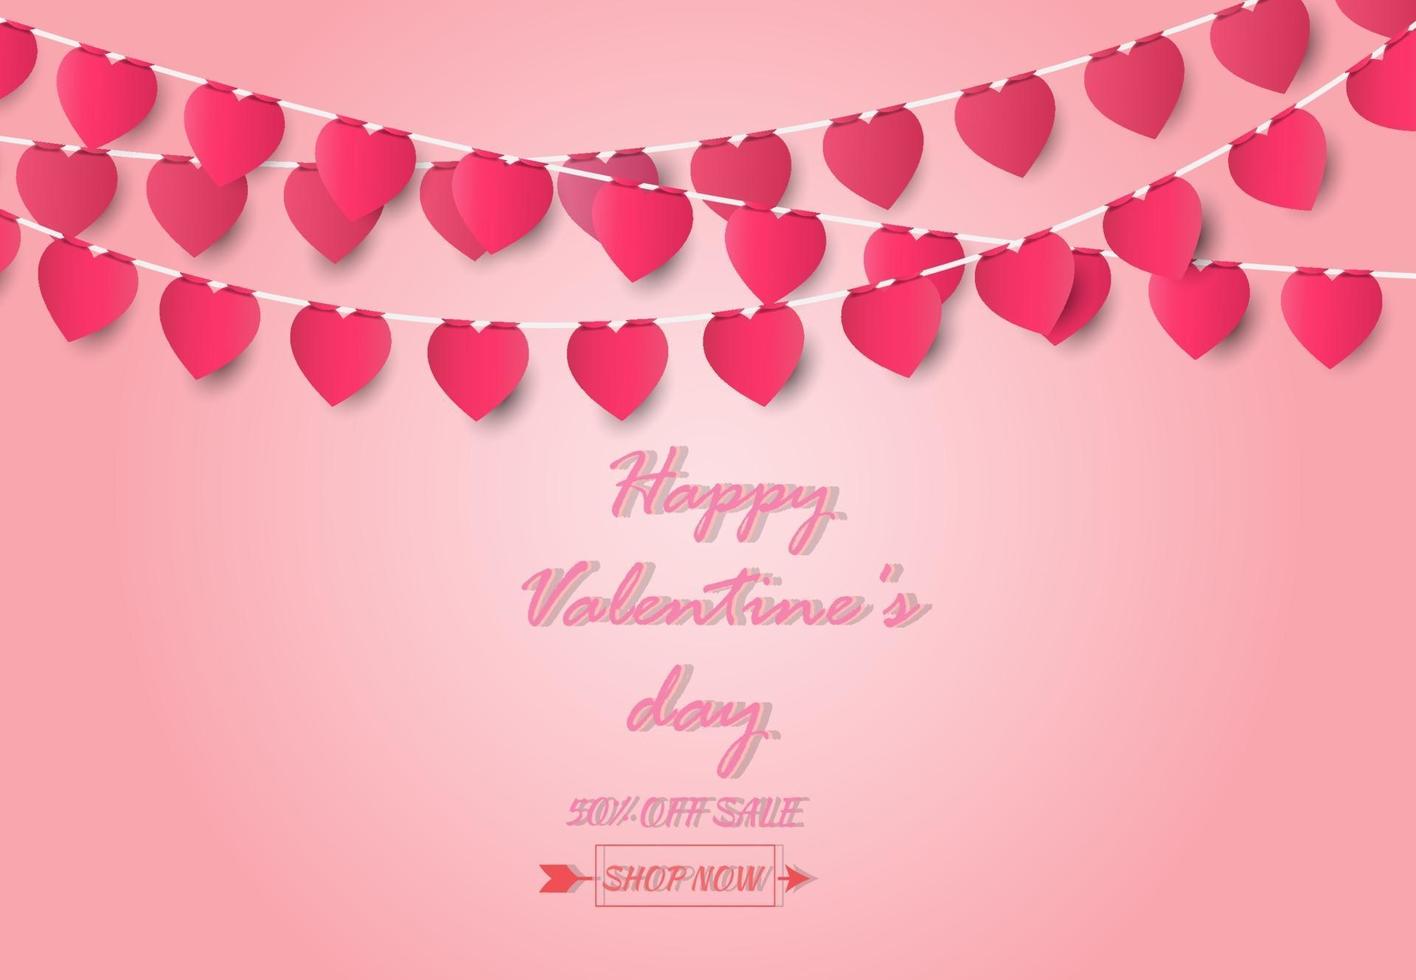 Tarjeta de felicitación del día de San Valentín y concepto de amor con forma de corazón sobre fondo rosa, estilo de arte de papel. vector